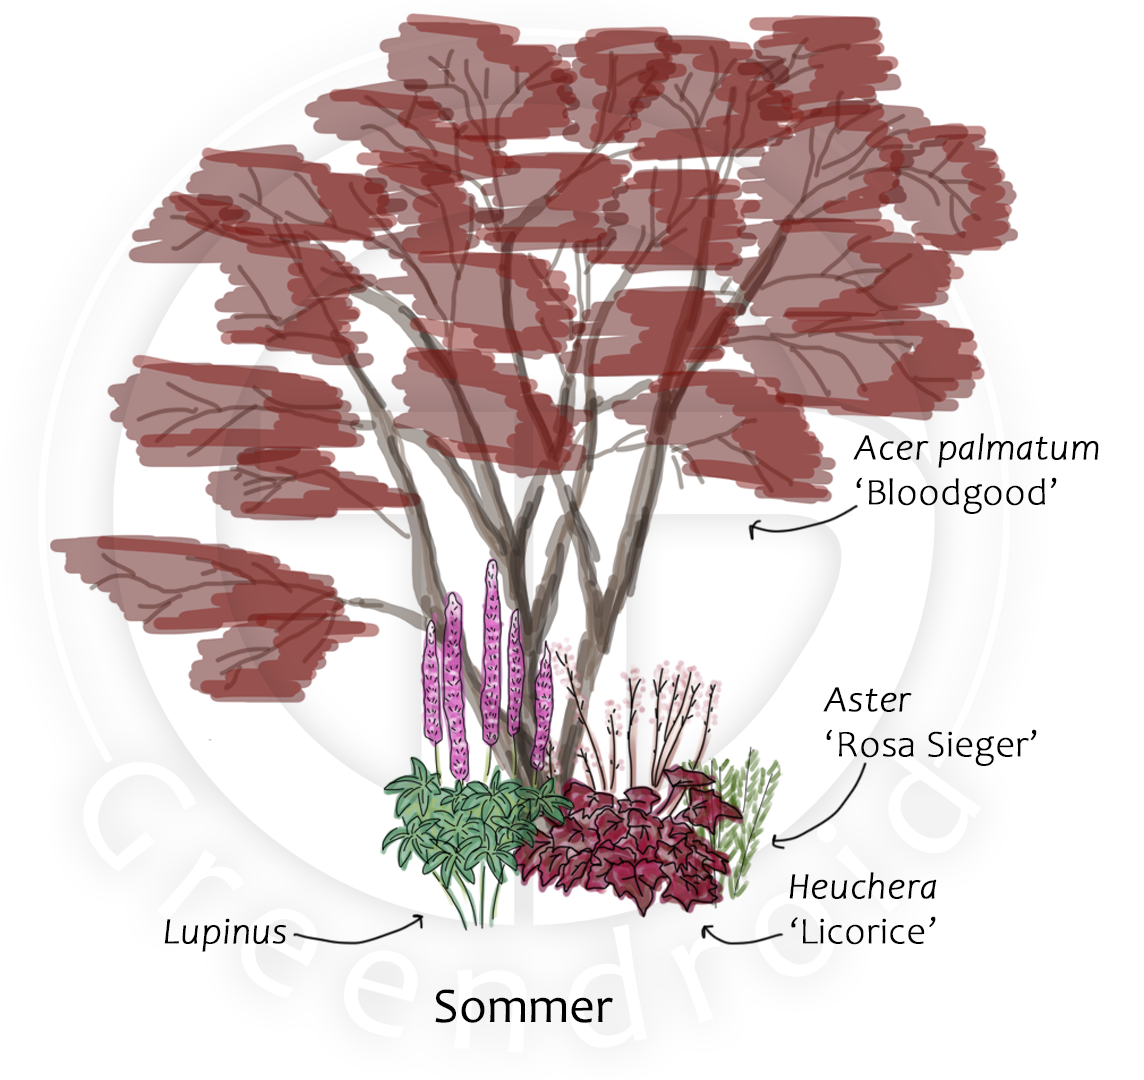 Acer, Lupinus und Heuchera im Sommer